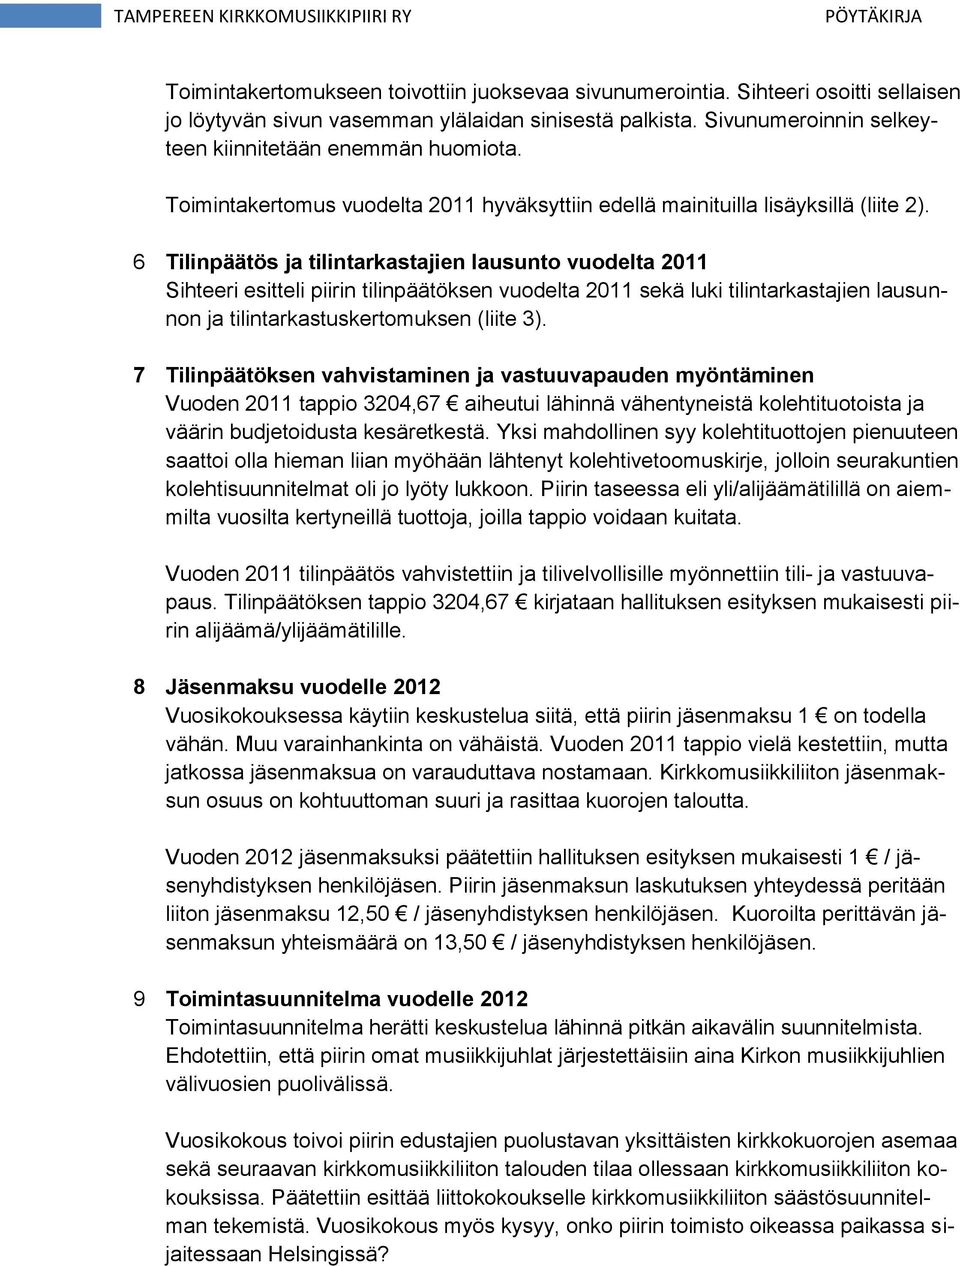 6 Tilinpäätös ja tilintarkastajien lausunto vuodelta 2011 Sihteeri esitteli piirin tilinpäätöksen vuodelta 2011 sekä luki tilintarkastajien lausunnon ja tilintarkastuskertomuksen (liite 3).